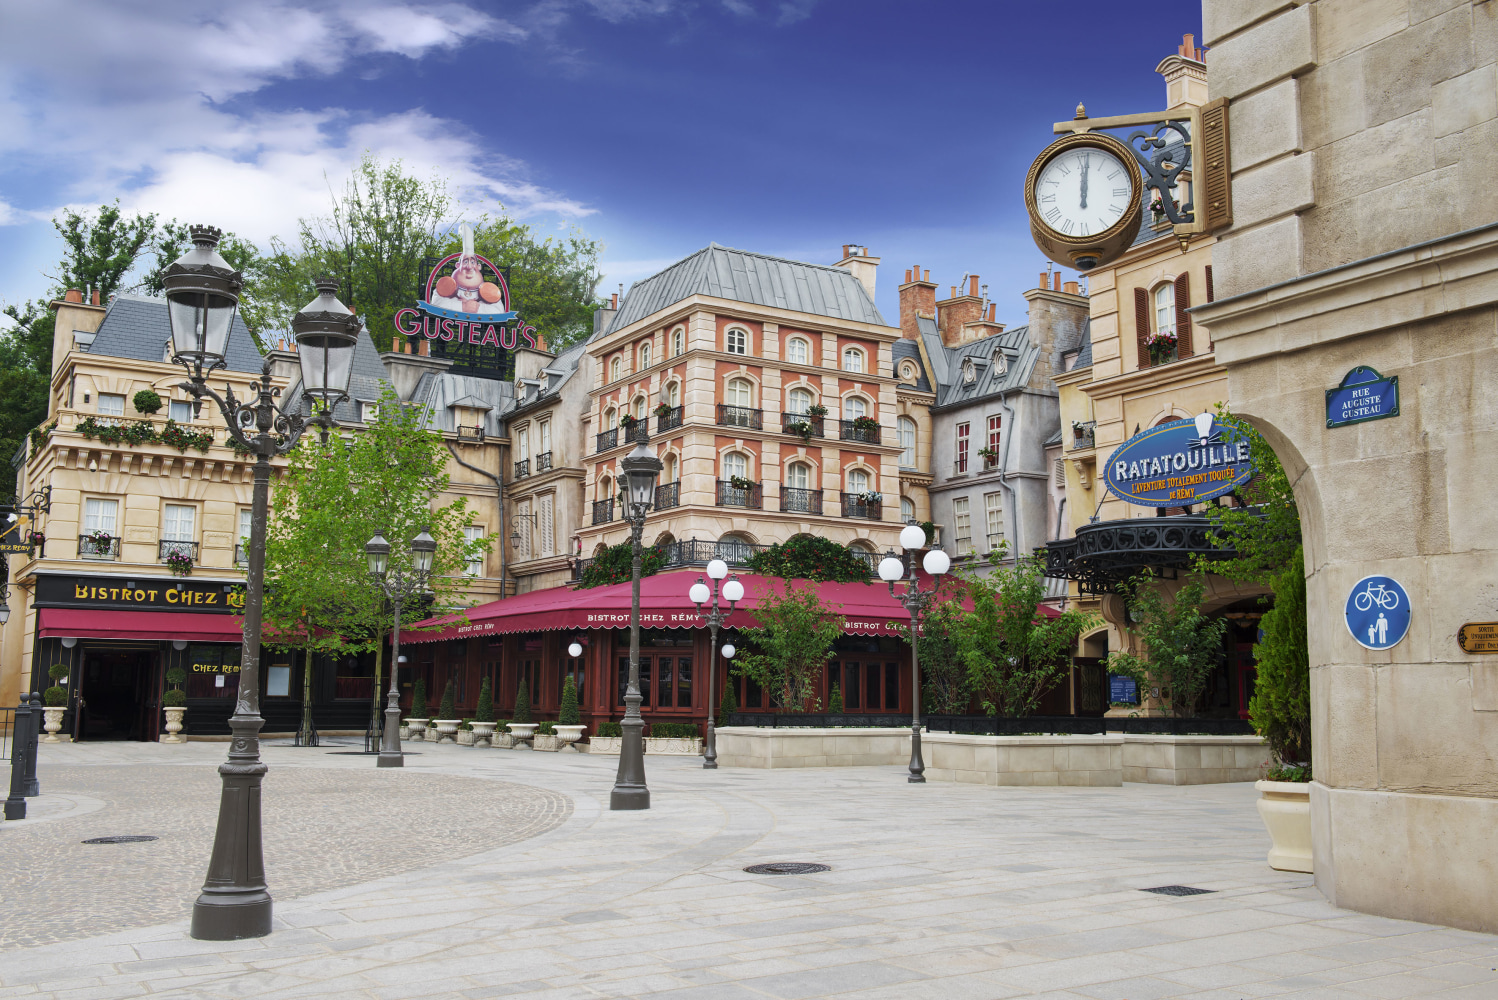 Disneyland Paris cooks up a 'Ratatouille'-flavored adventure - NBC News